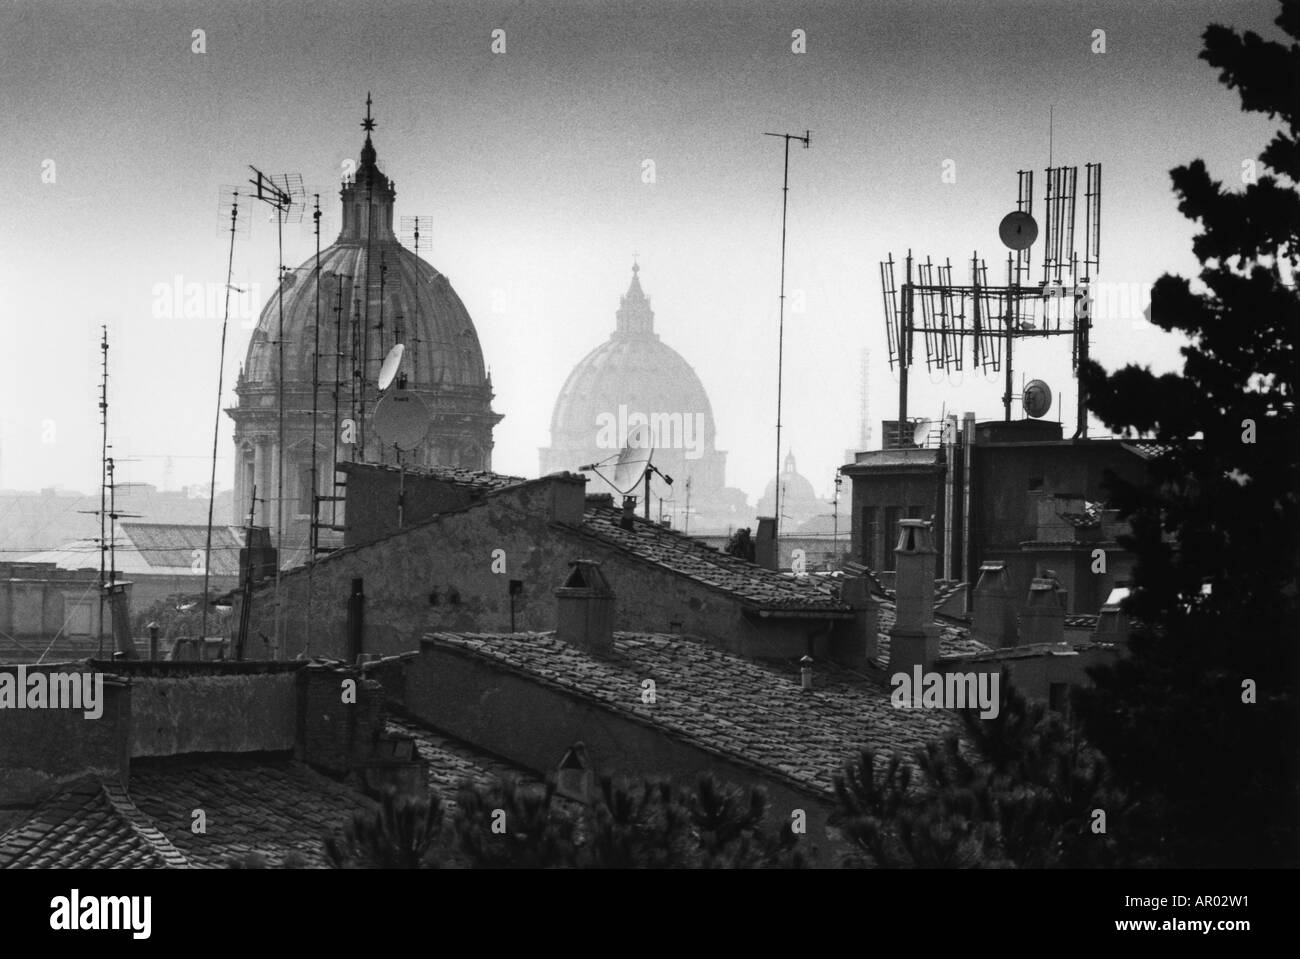 Roofs, Basilica S. Pietro Rome, Italy Stock Photo